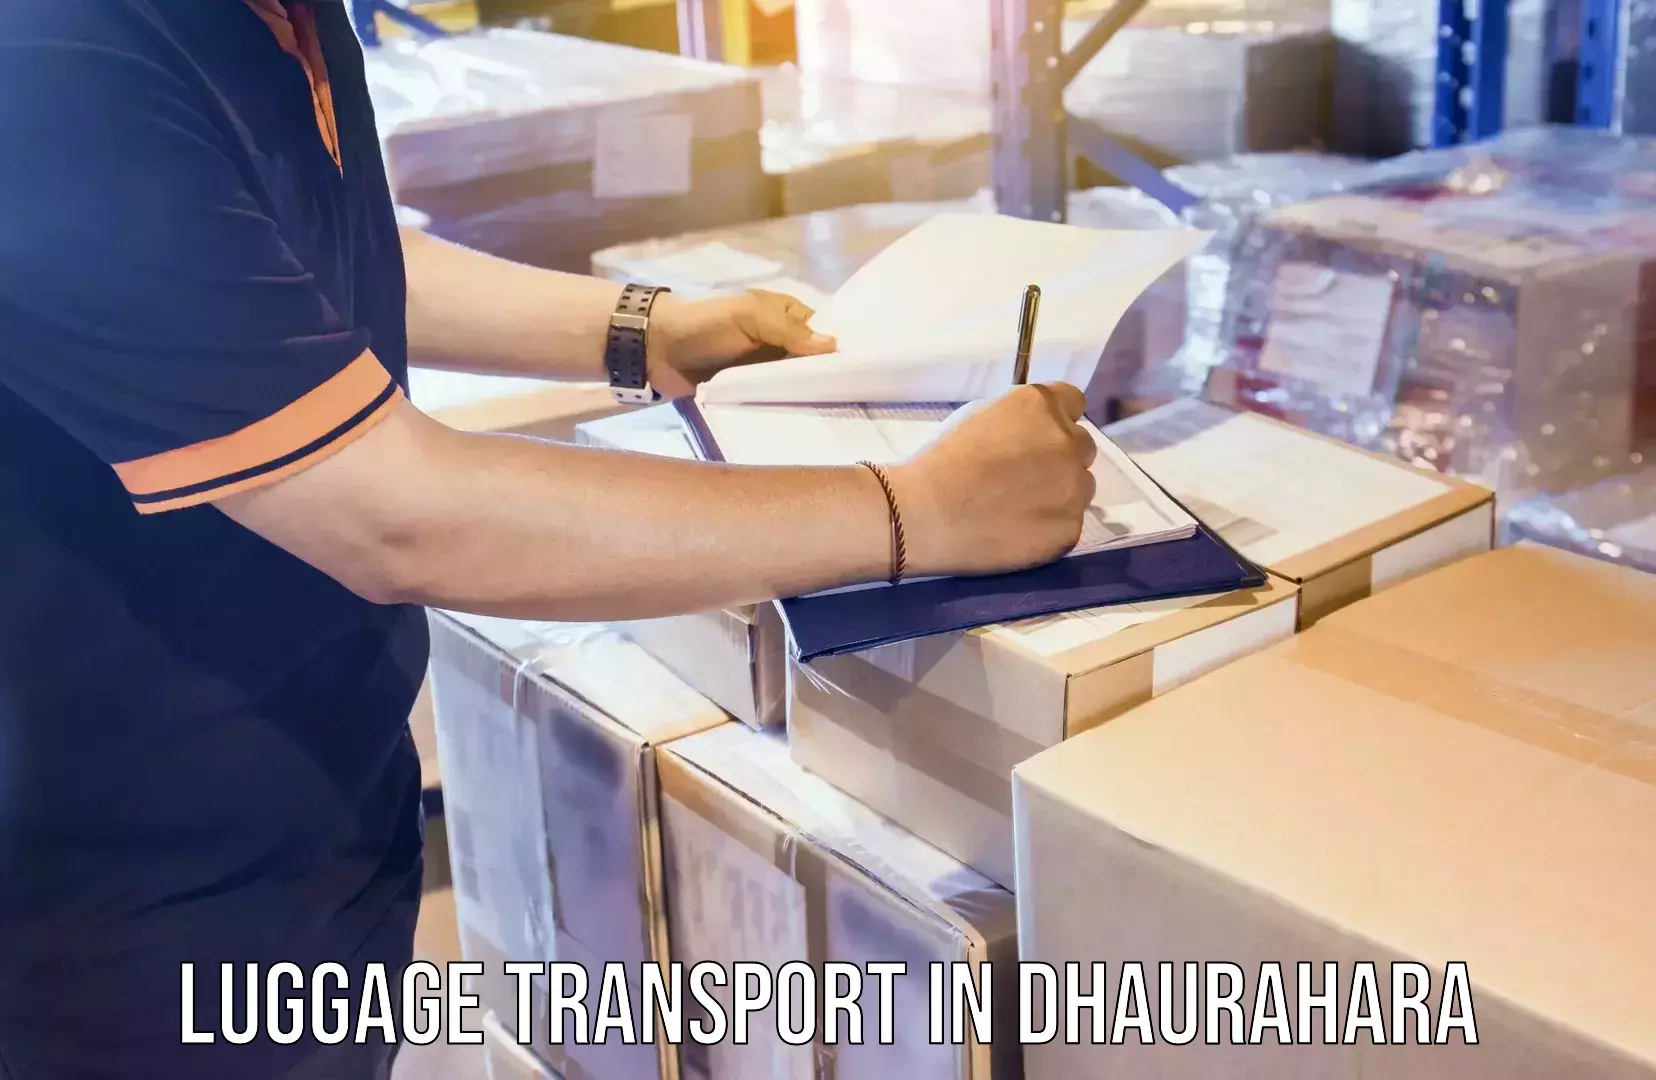 Doorstep luggage pickup in Dhaurahara